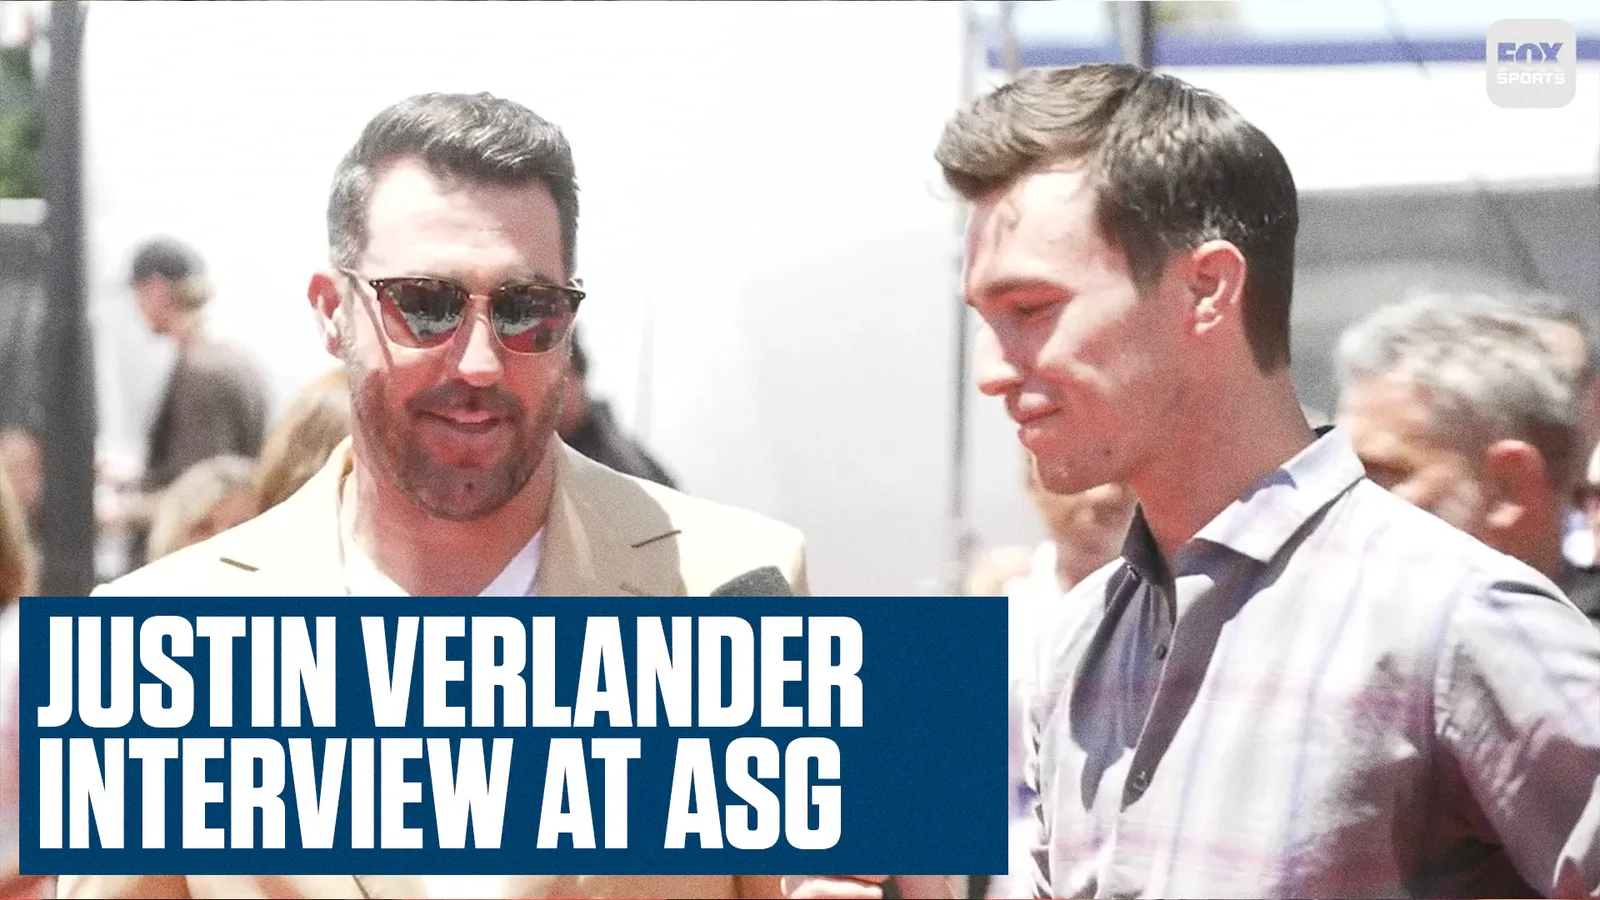 Justin Verlander's interview with his brother, Ben Verlander